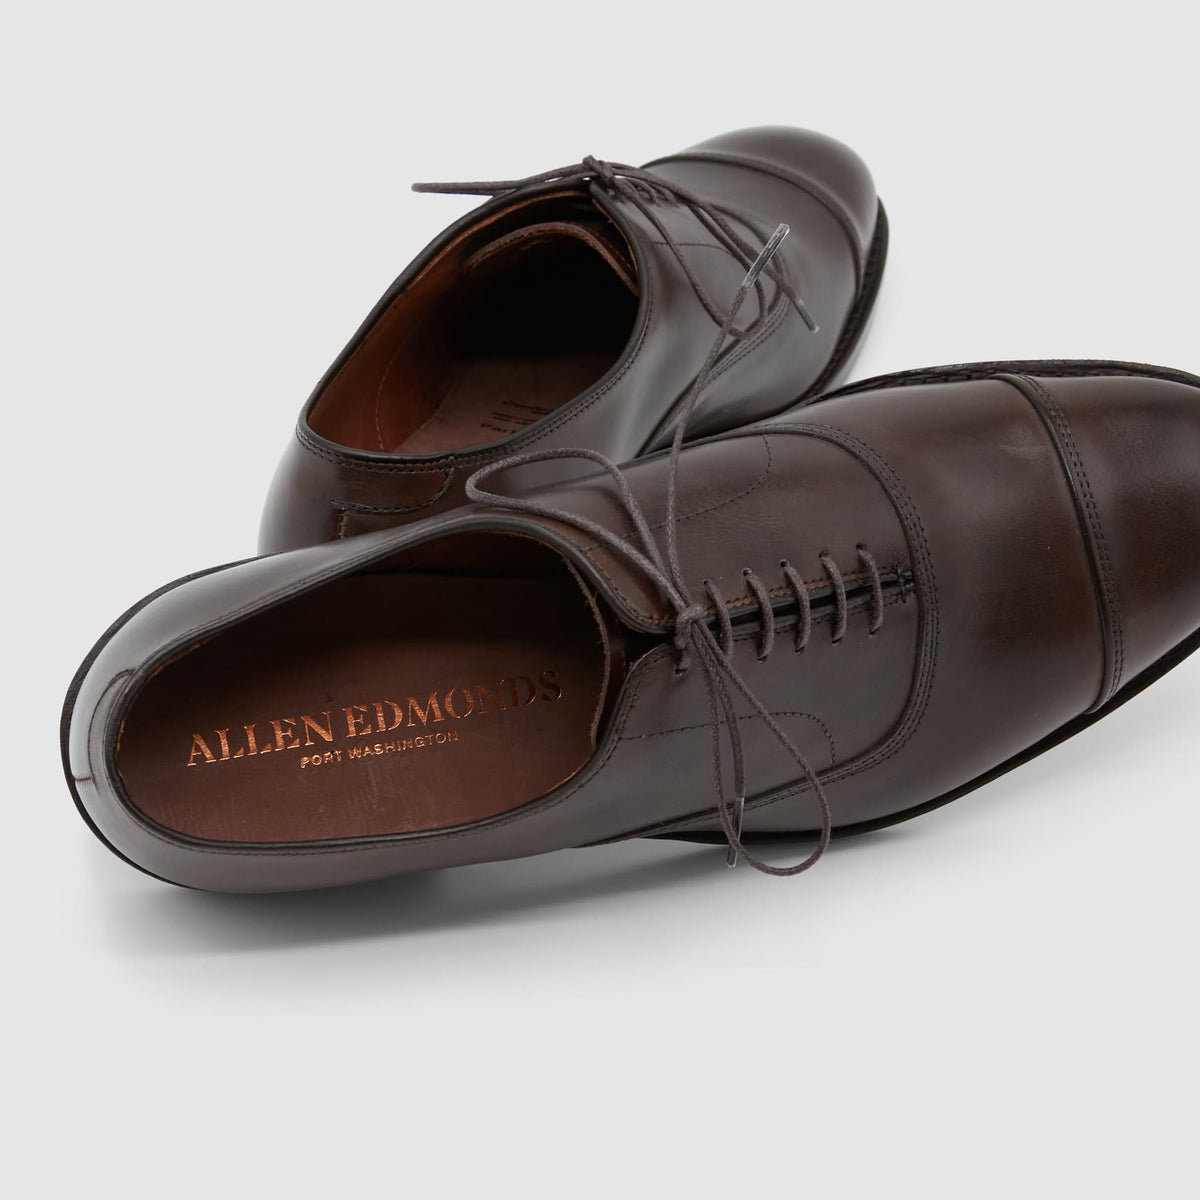 Allen Edmonds Park Avenue Cap Toe Oxford Shoes